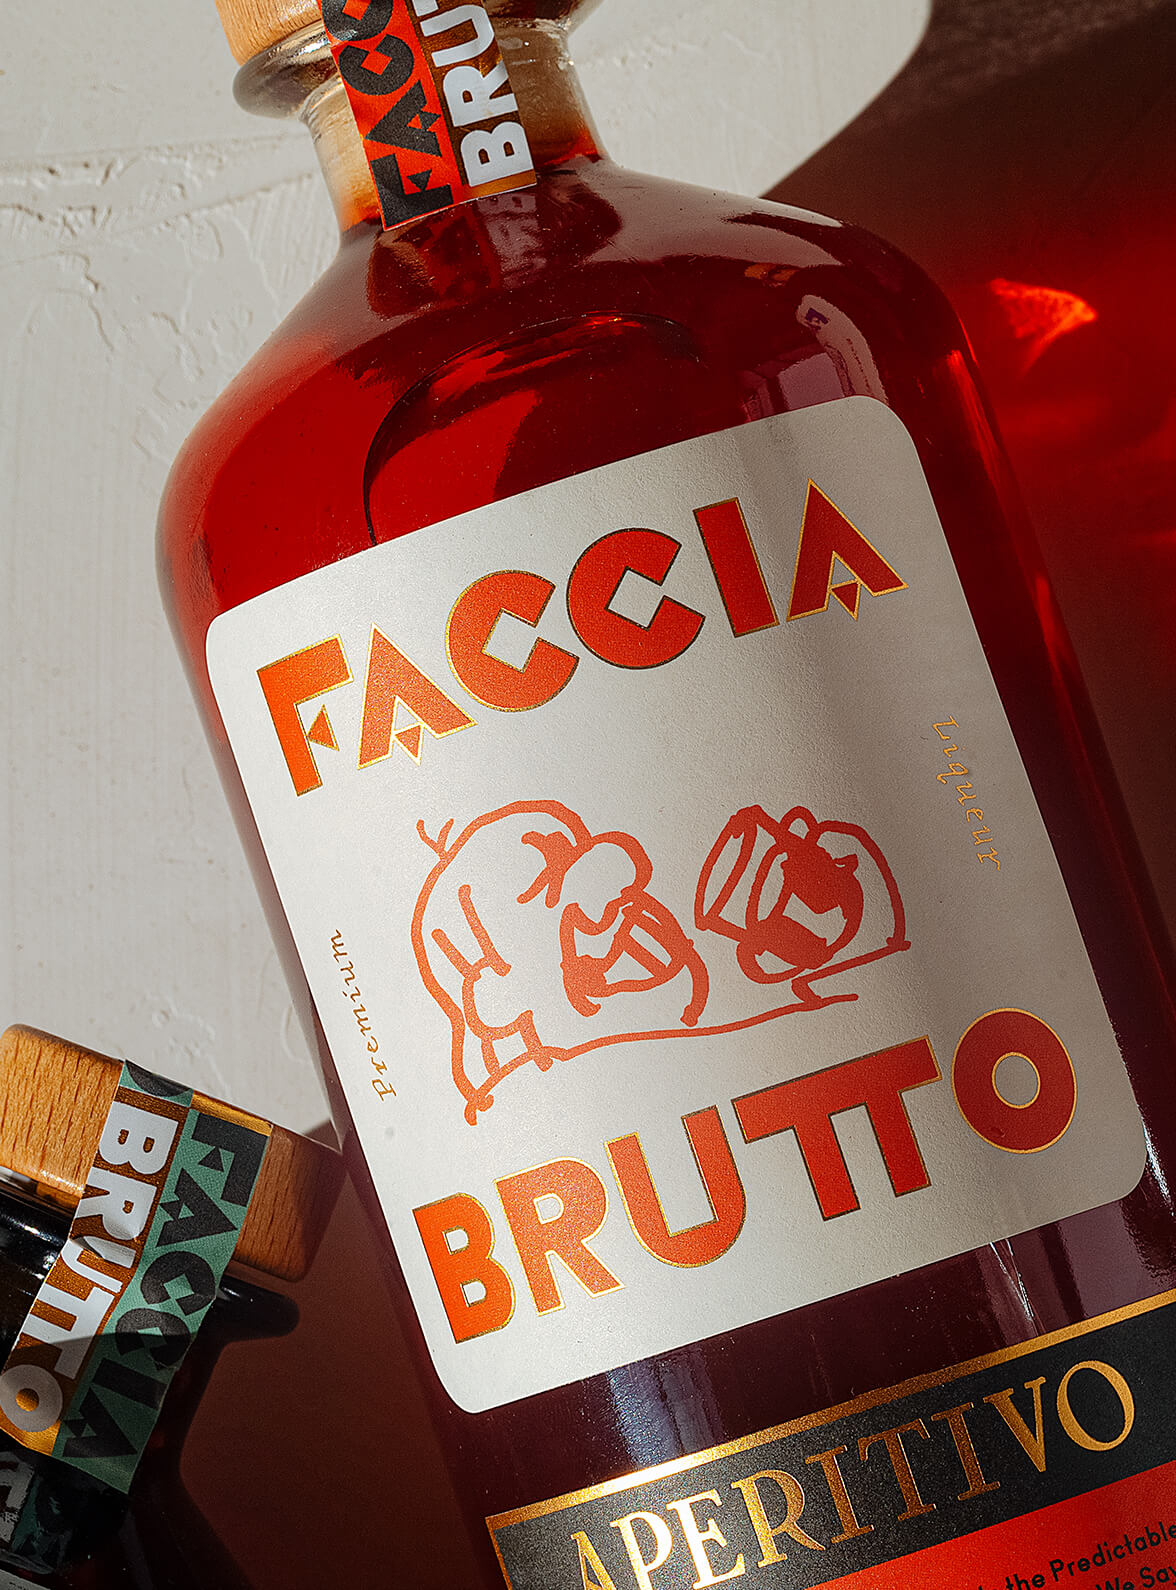 Close up of Faccia Brutto aperitivo label